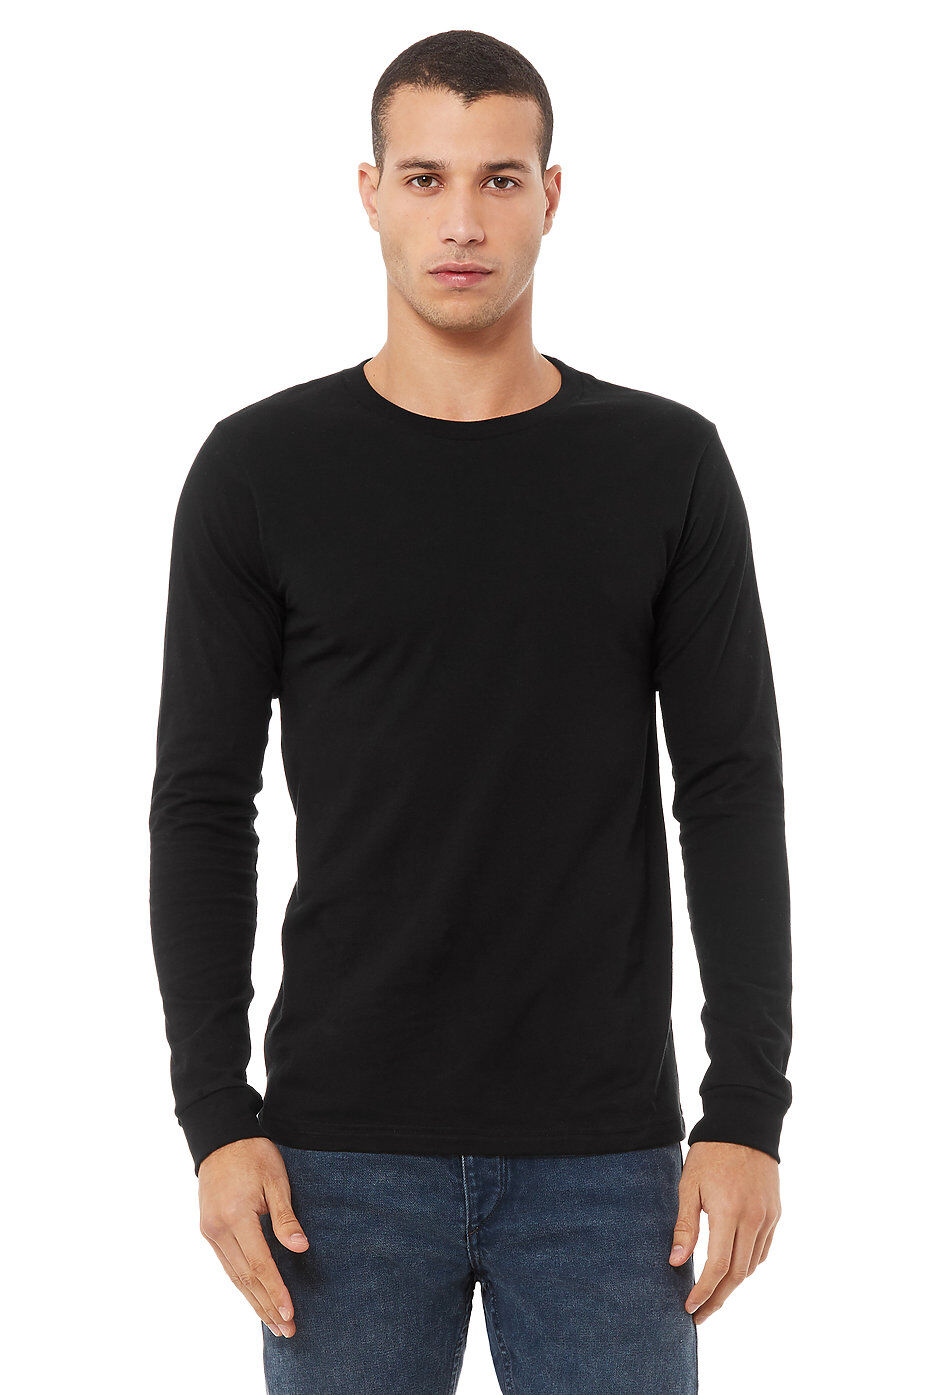 Custom Black Long Sleeve T-shirt Printing ⋆ Merch38